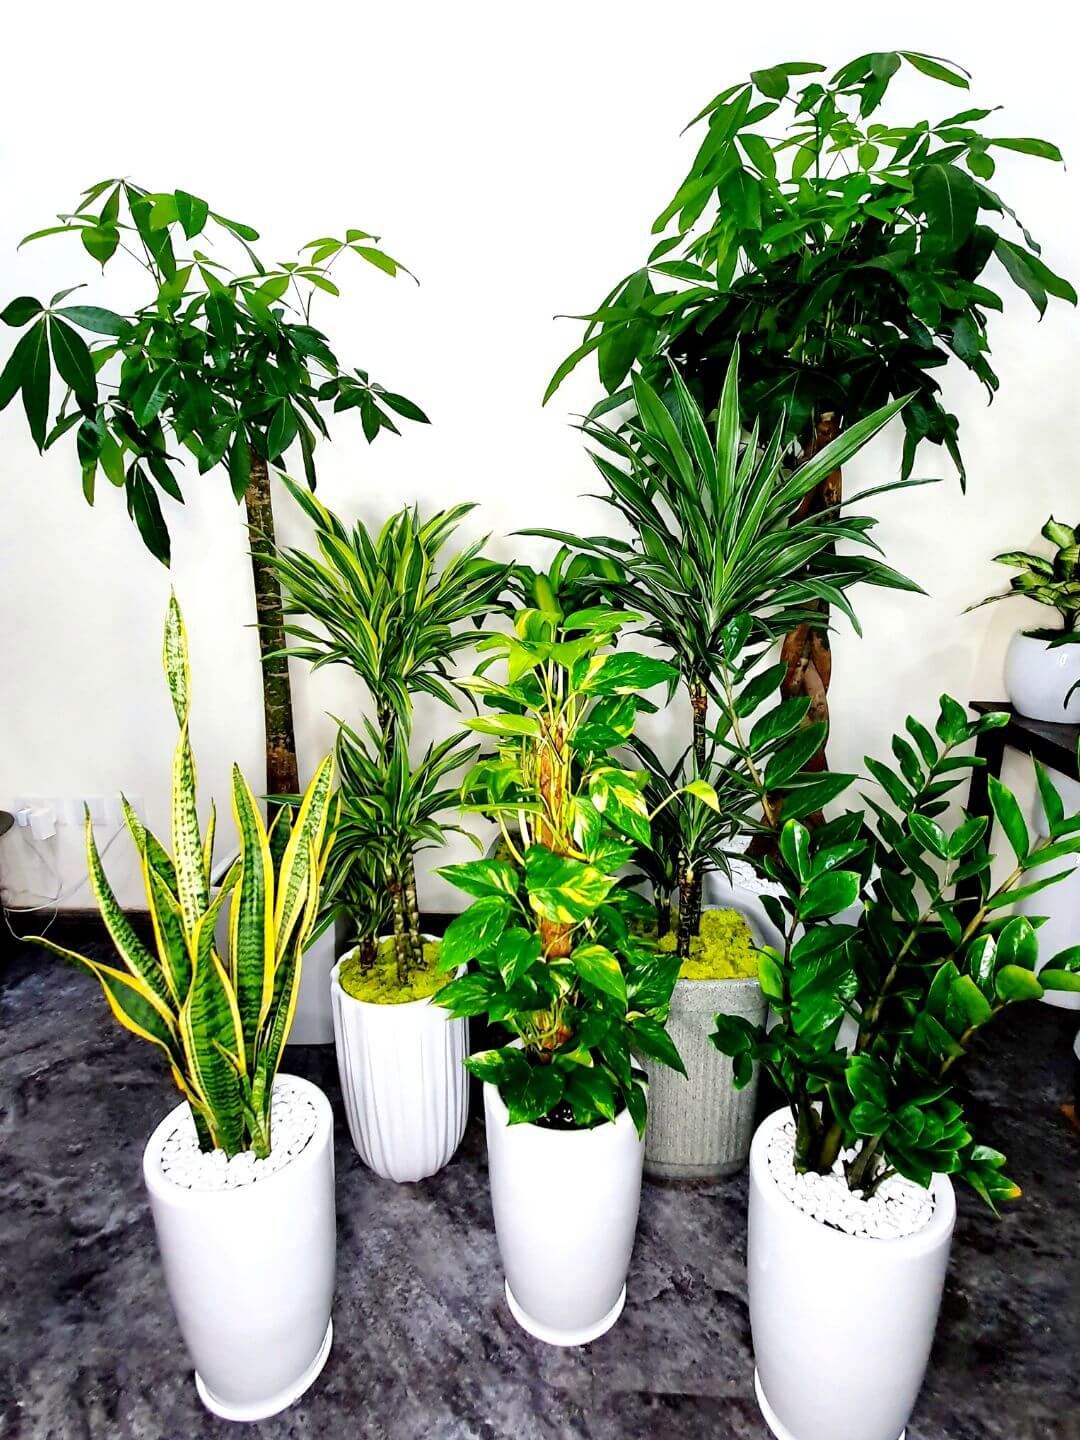 Corporate Office Bundle 8 Premium Plants | Low Light